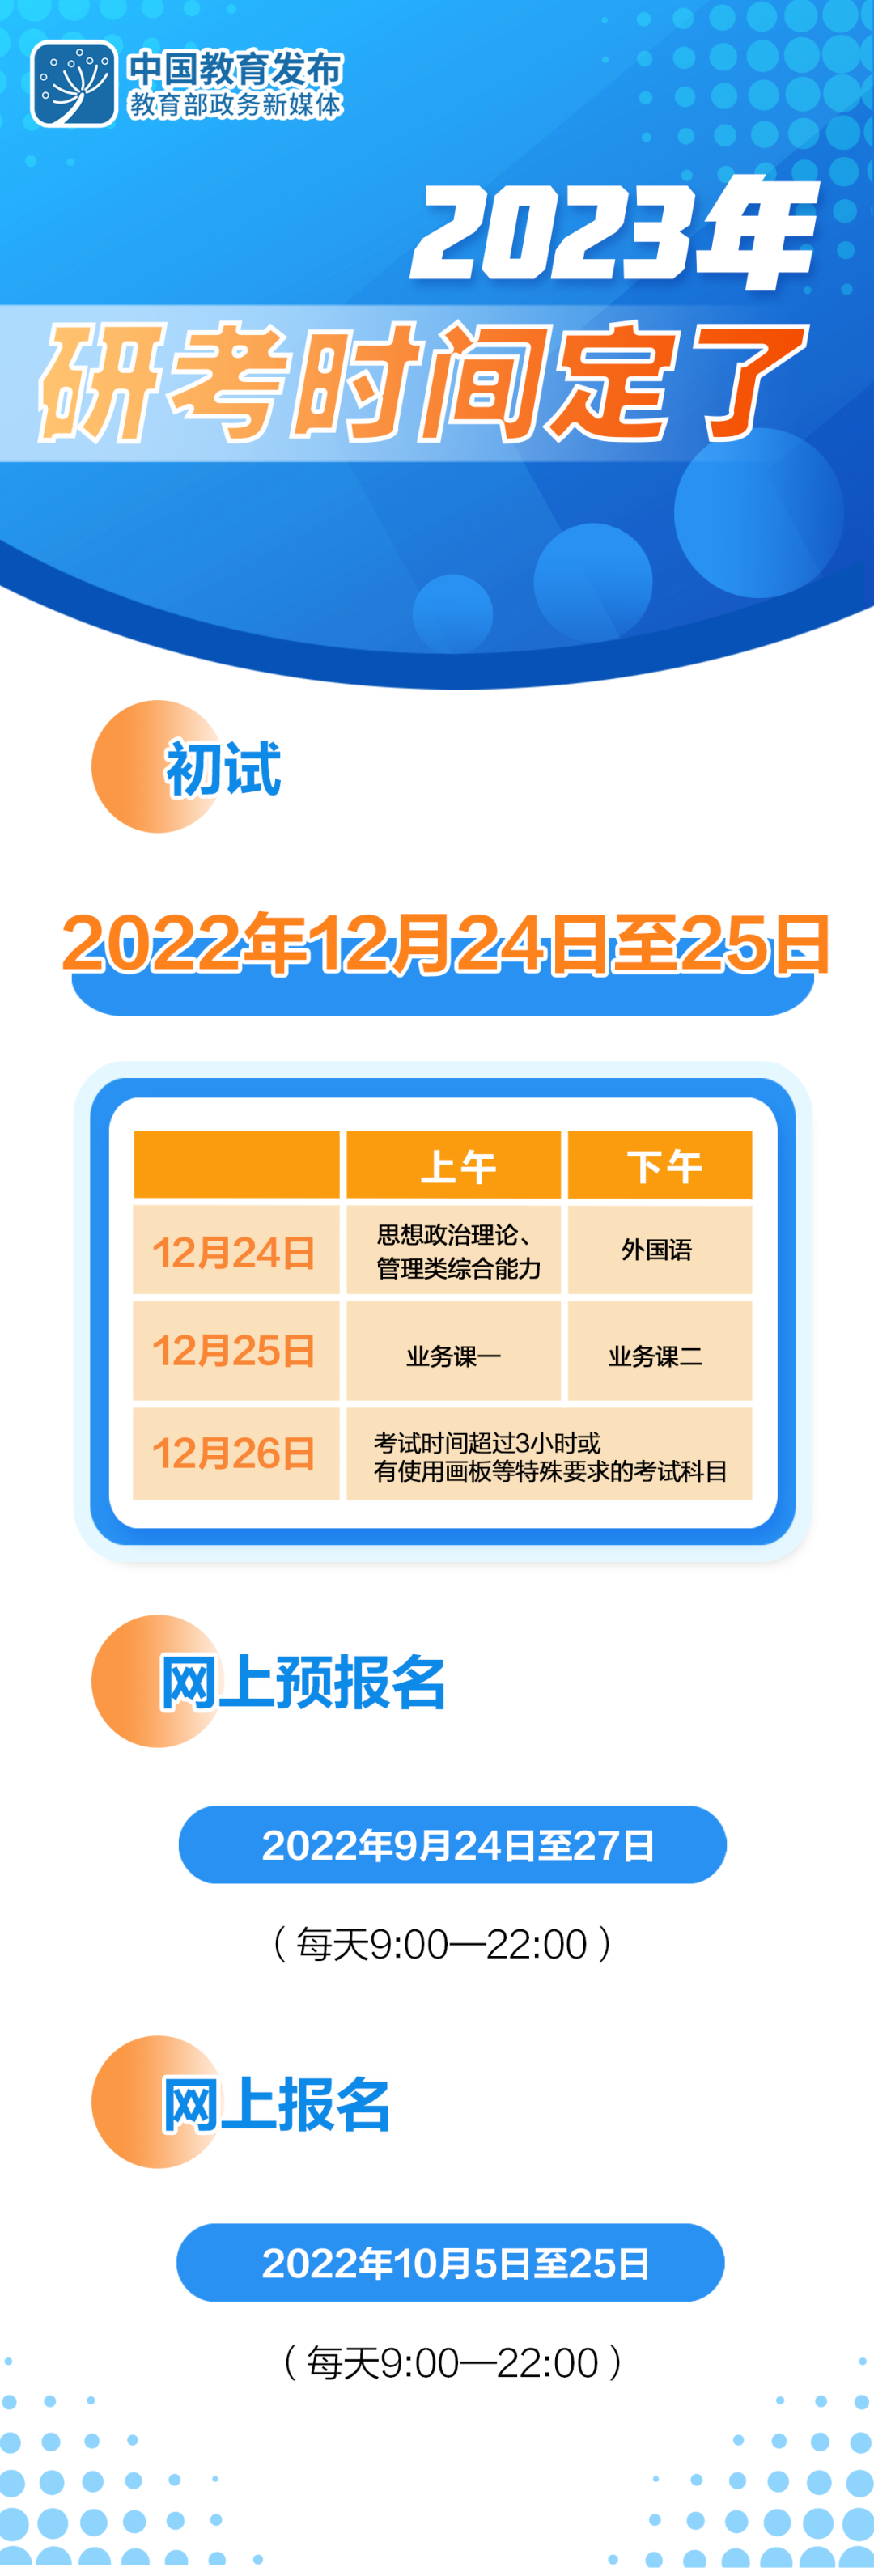 2023年考研时间确定！网上预报名2022年9月24日起、初试定于12月24日至25日！